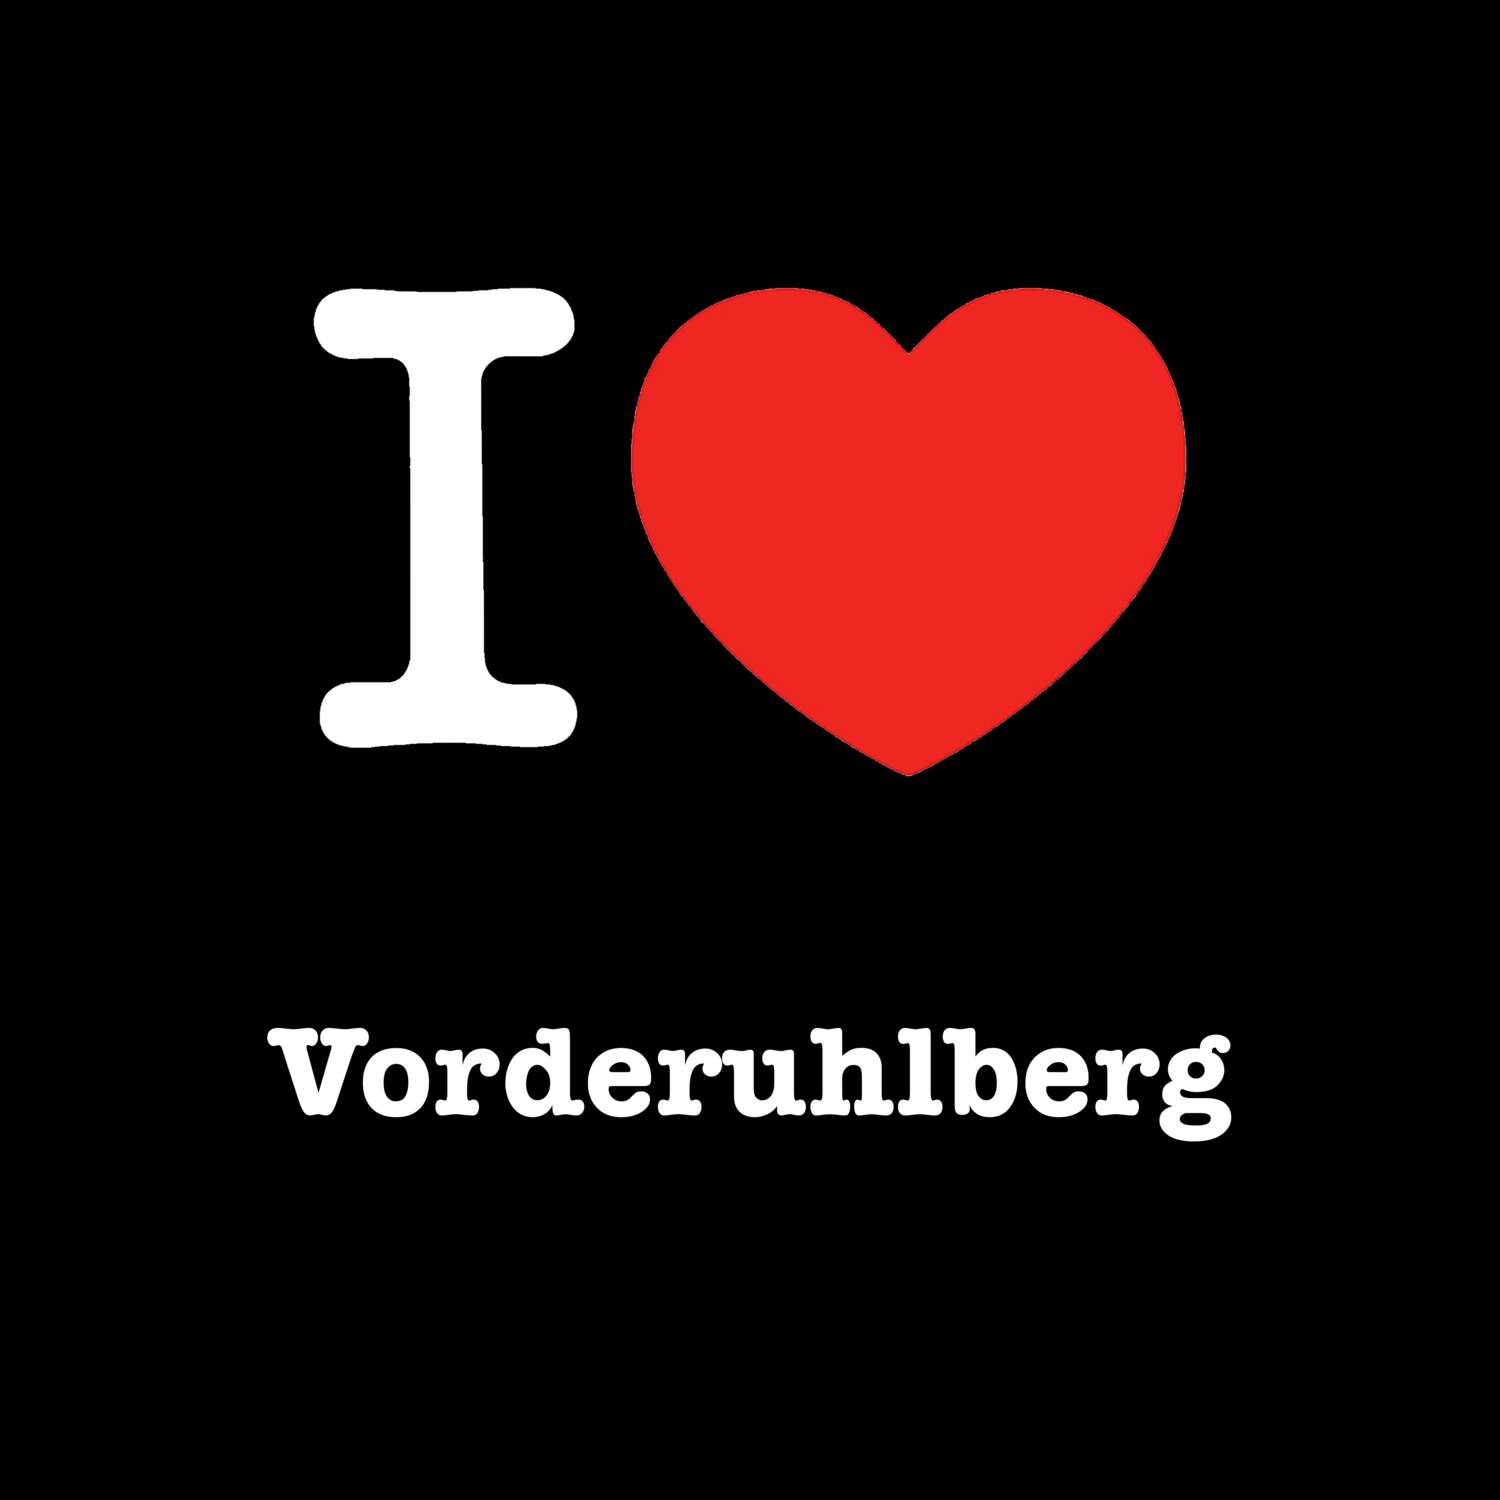 Vorderuhlberg T-Shirt »I love«